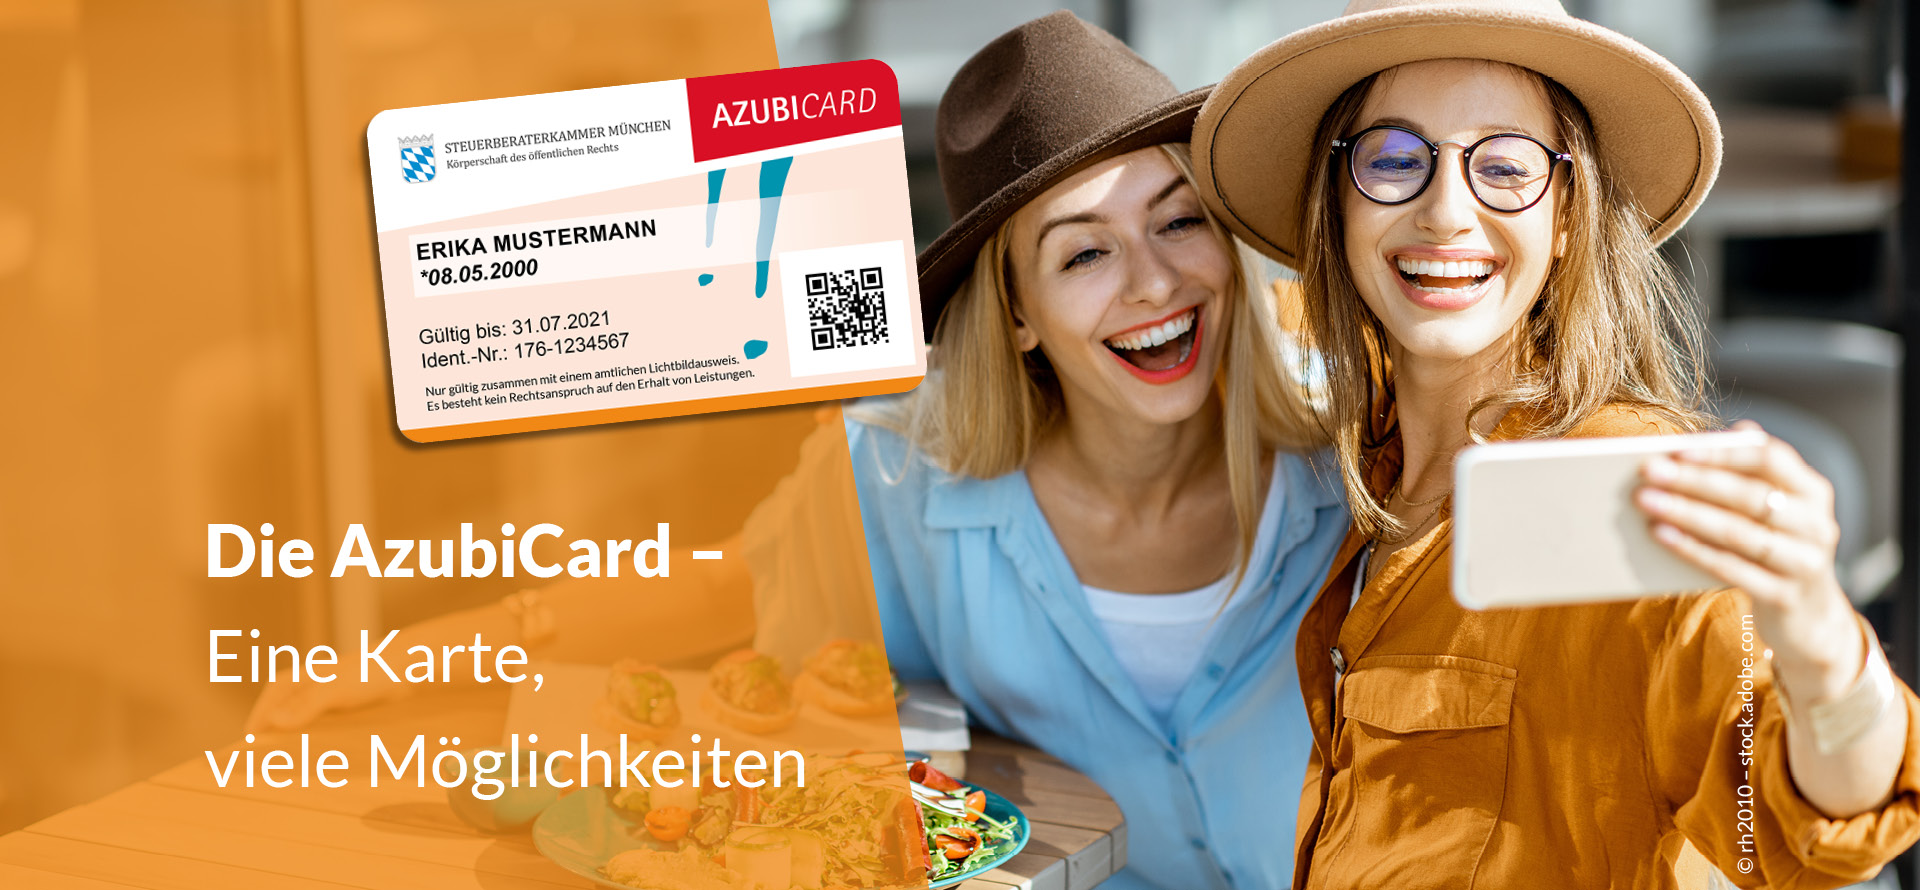 Foto: Weißer Schriftzug "Die AzubiCard - Eine Karte, viele Möglichkeiten" auf orangenem Hintergrund. Ein Musterbild einer AzubiCard. Bild: Zwei Freundinnen beim Brunchen / Essen machen ein Selfie.